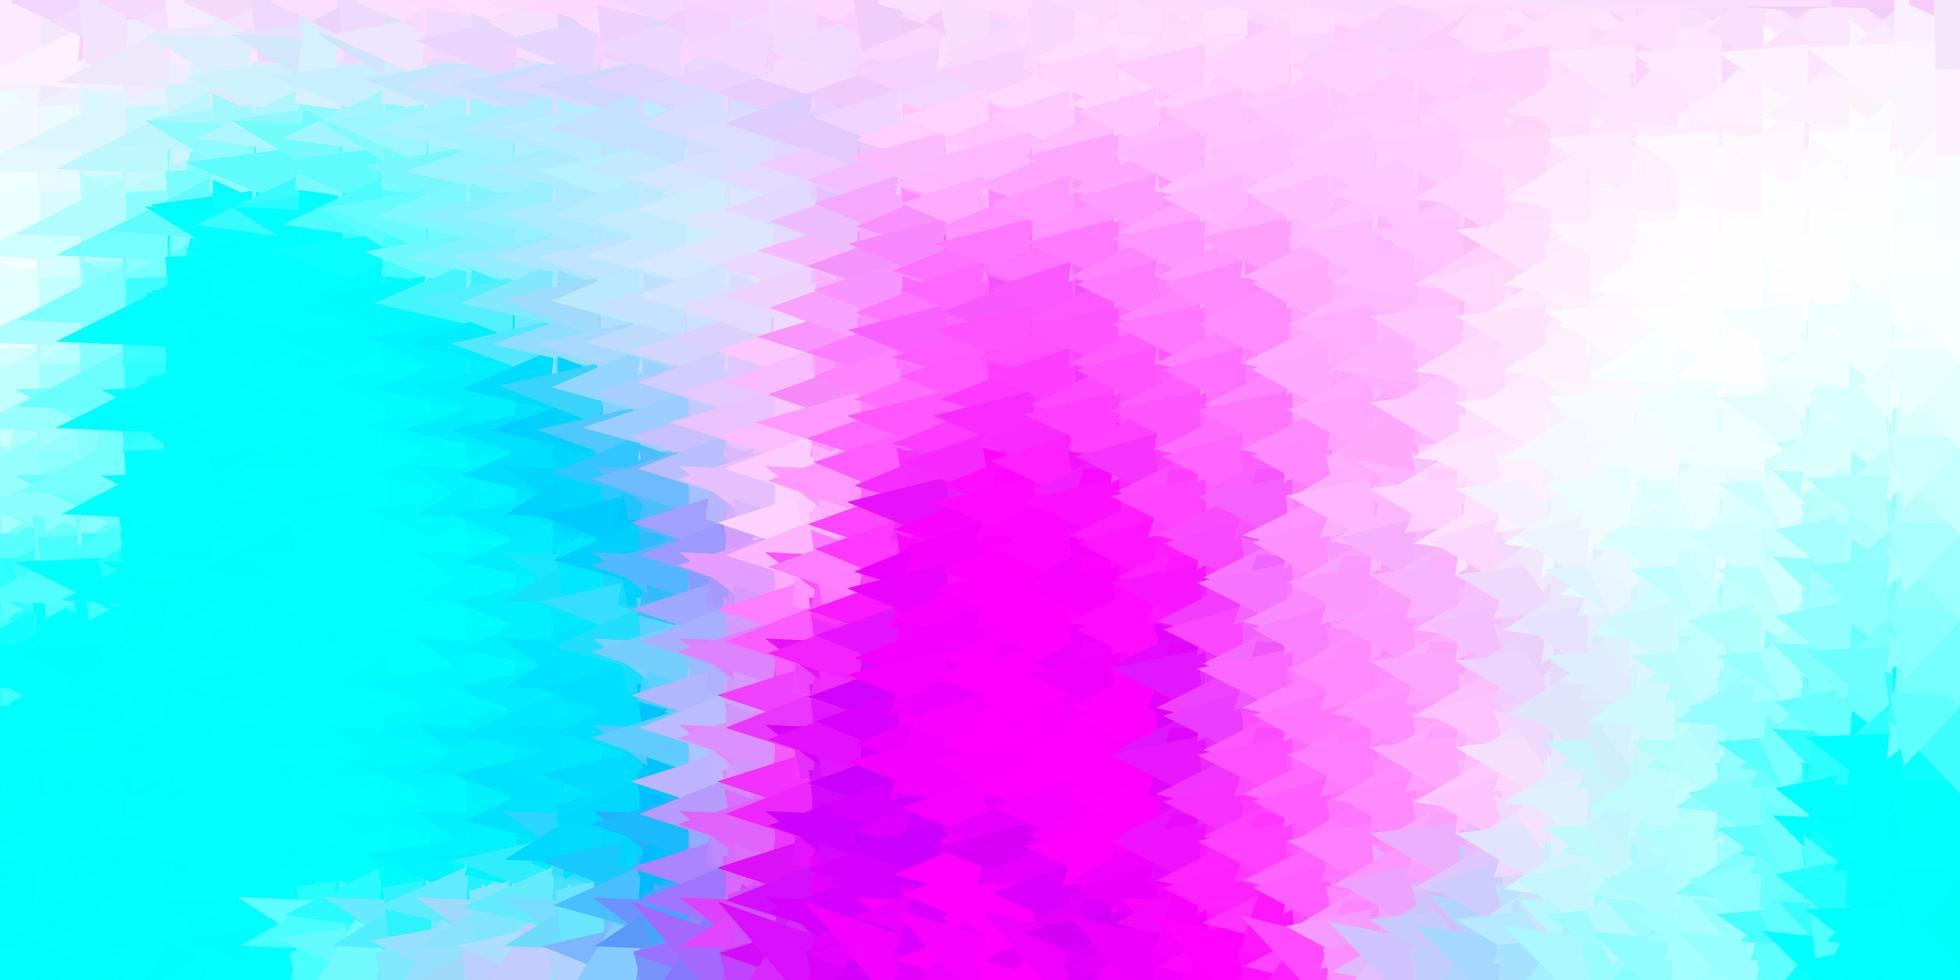 textura polígono degradado vector rosa claro, azul.